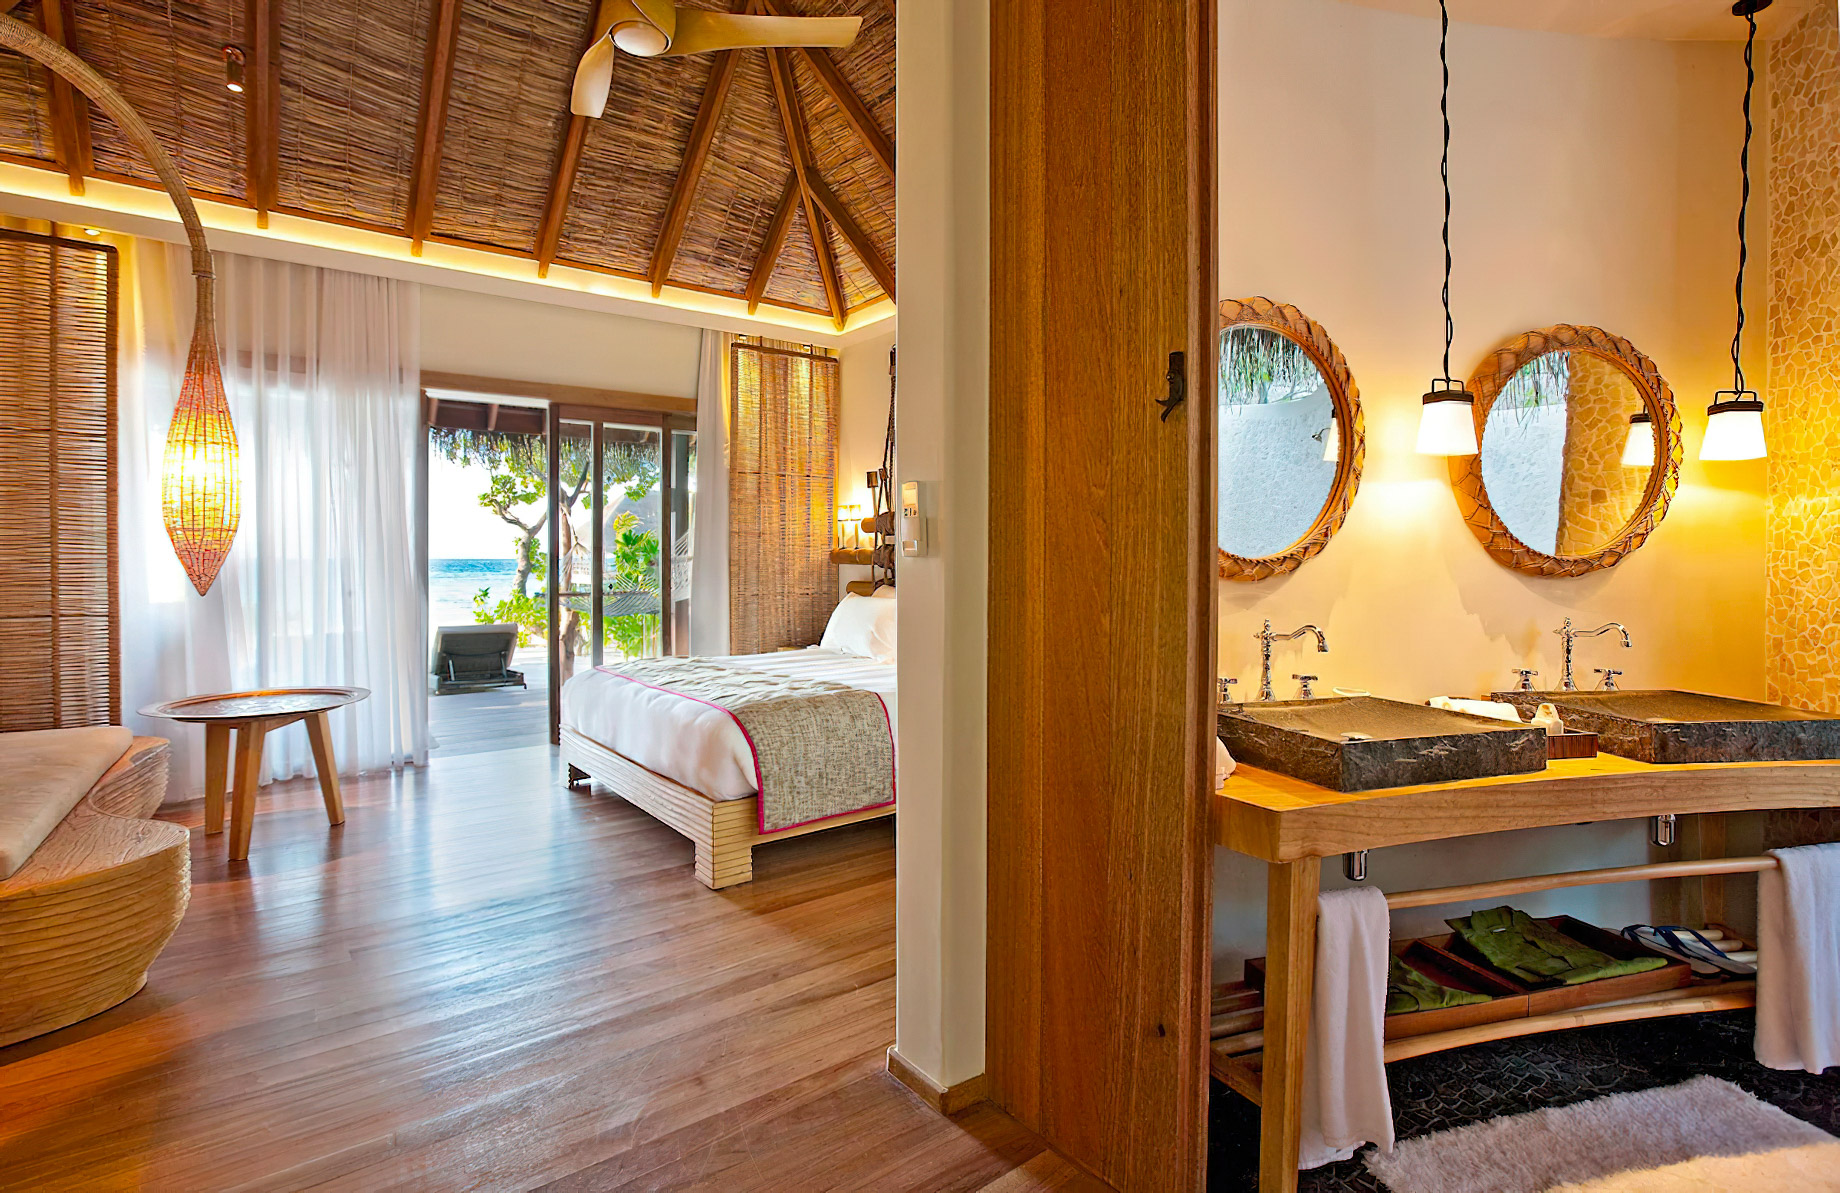 Constance Moofushi Resort – South Ari Atoll, Maldives – Beach Villa Interior